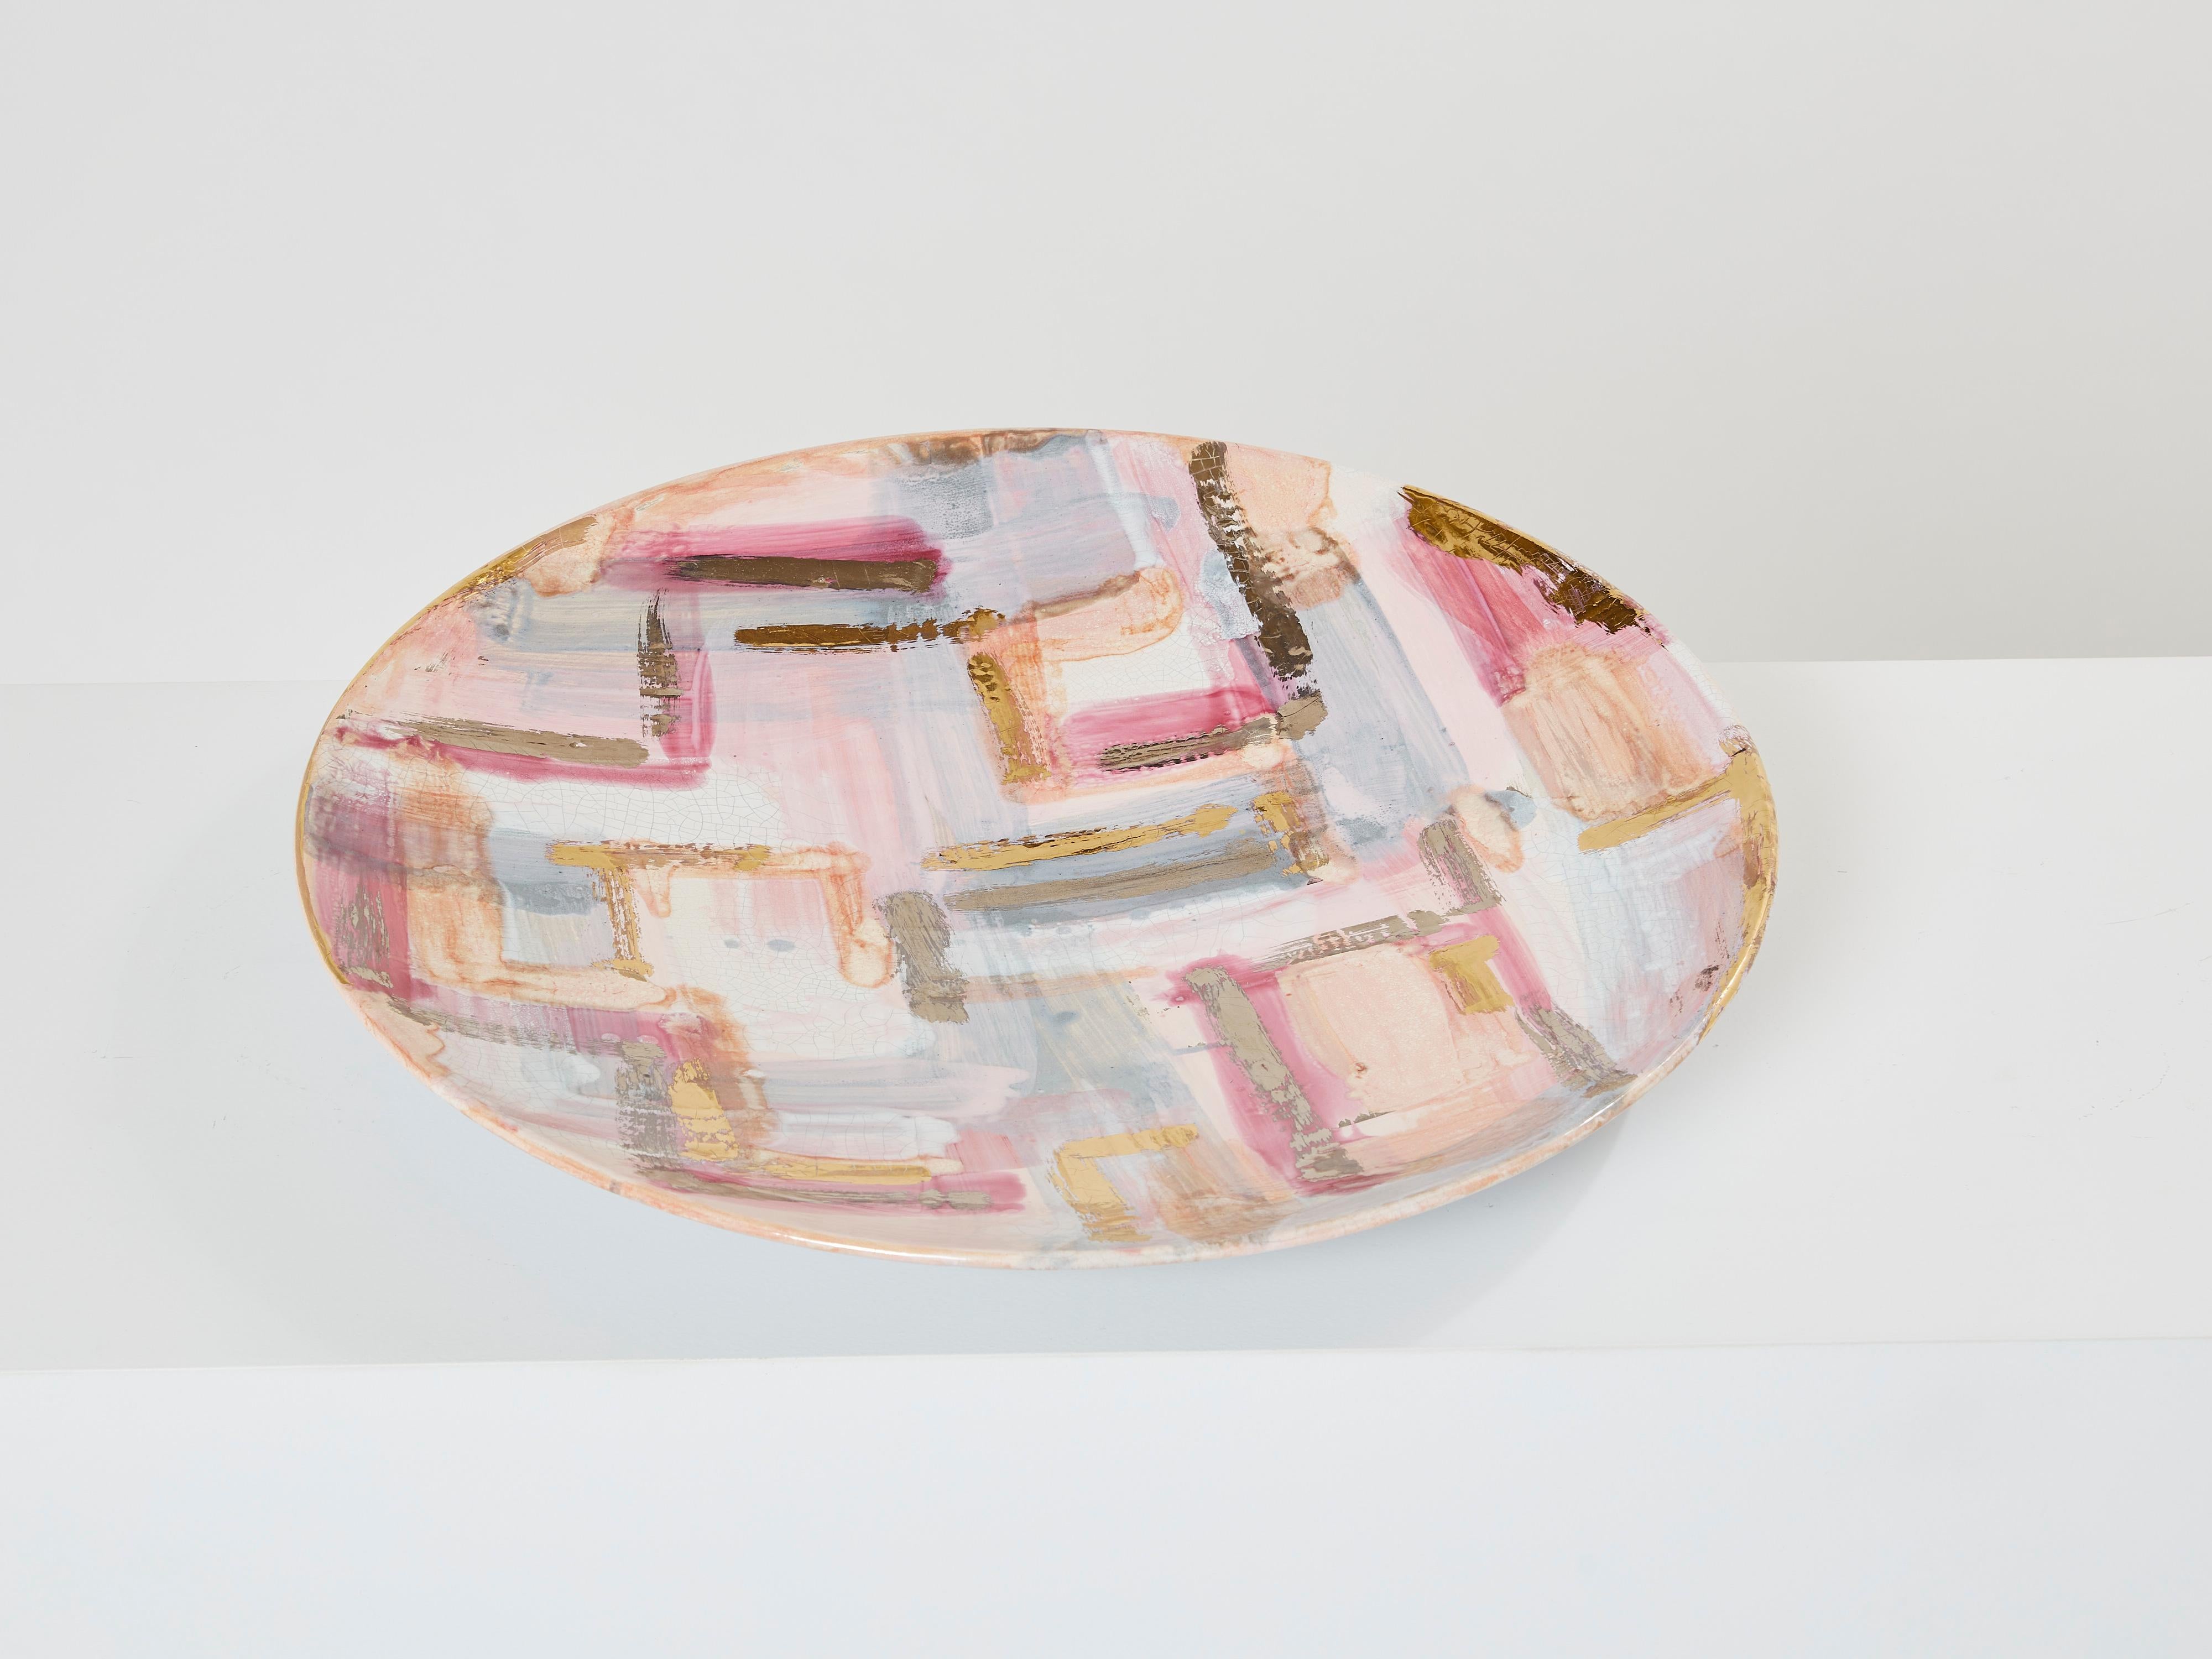 Cette assiette ronde en céramique émaillée colorée a été conçue et produite par Les Héritiers en France au début des années 1990. Cette grande assiette présente des couleurs pastel attrayantes, des détails dorés et une glaçure craquelée sur tout le